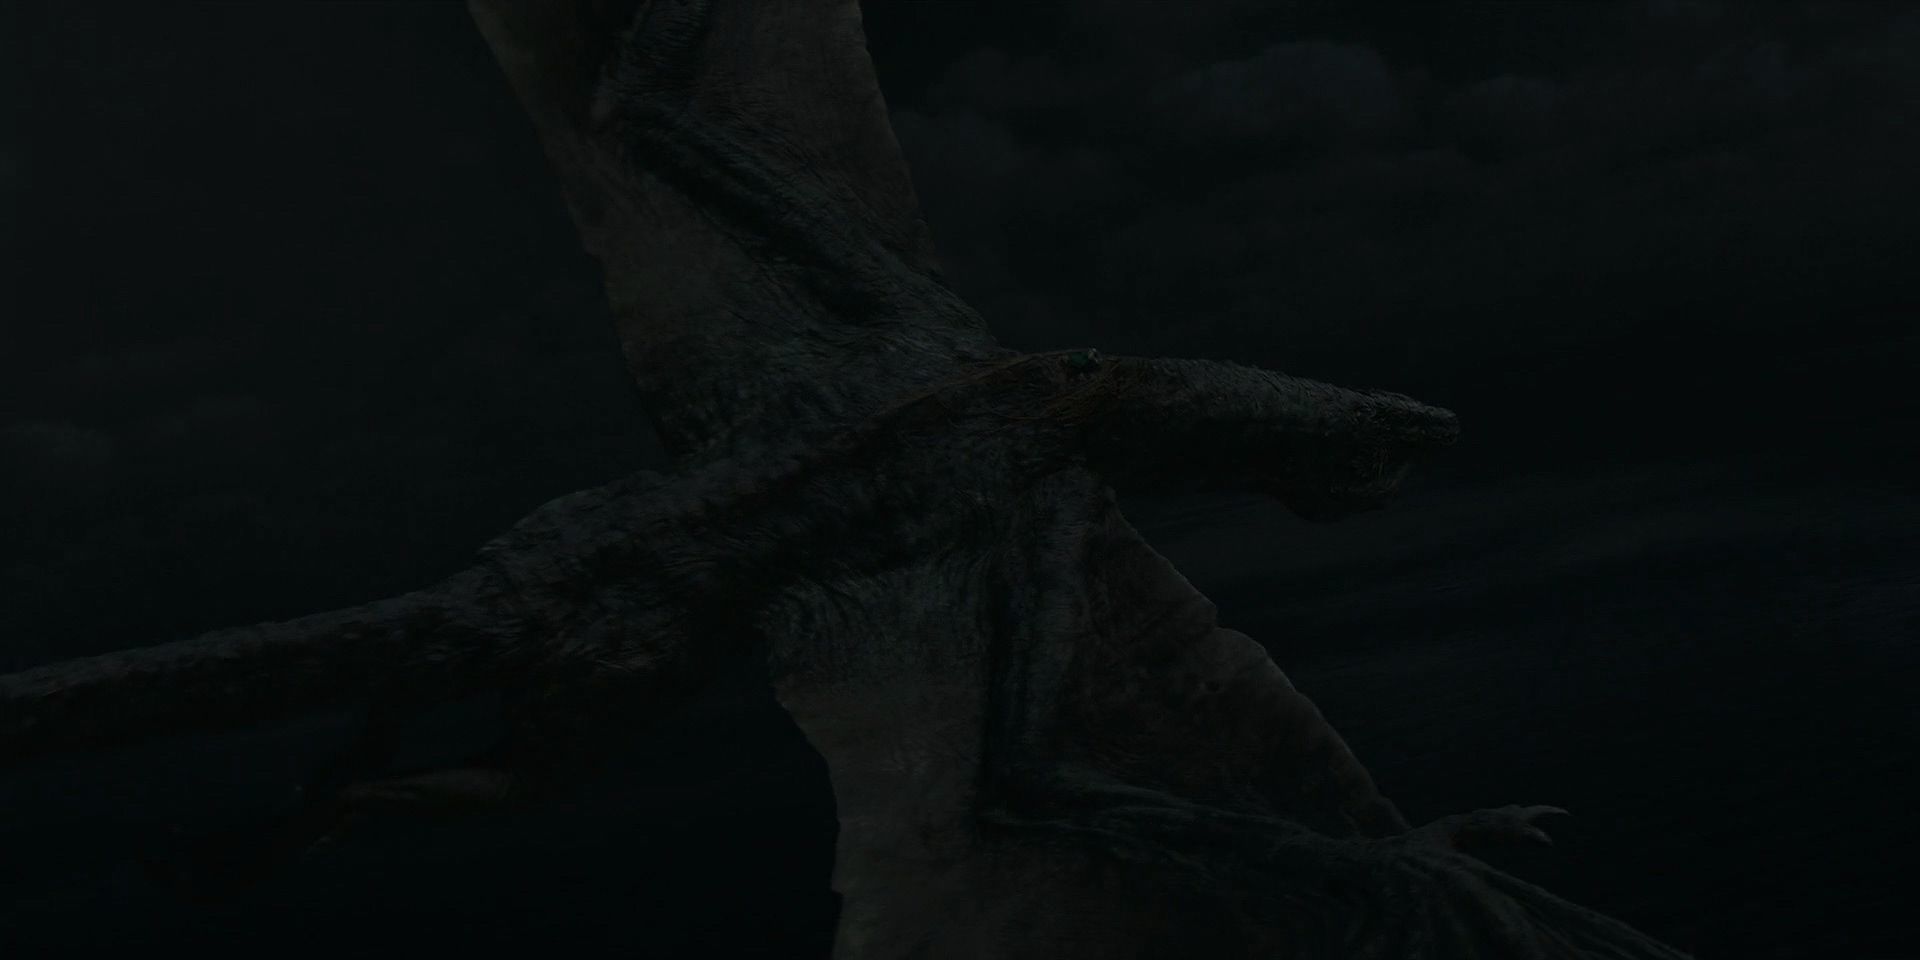 Как драконы в «Доме стрекозы» делают дырки в крыльях?